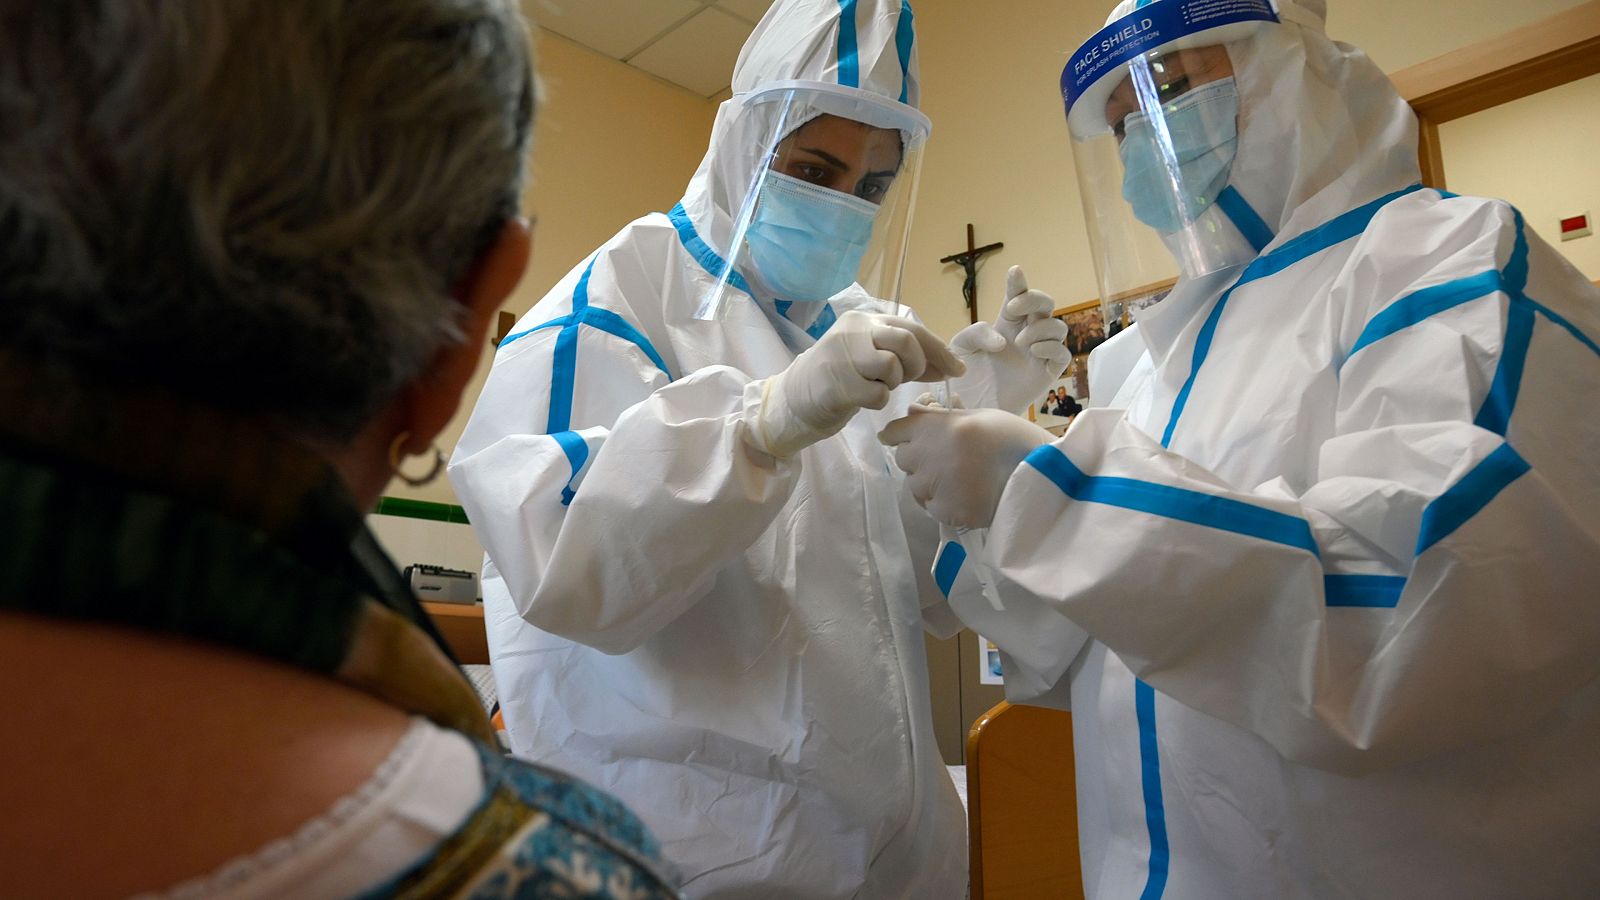 Profesionales sanitarios con trajes protectores toman una muestra para una prueba de Covid-19 en el Hospital Sant Miquel de Barcelona.